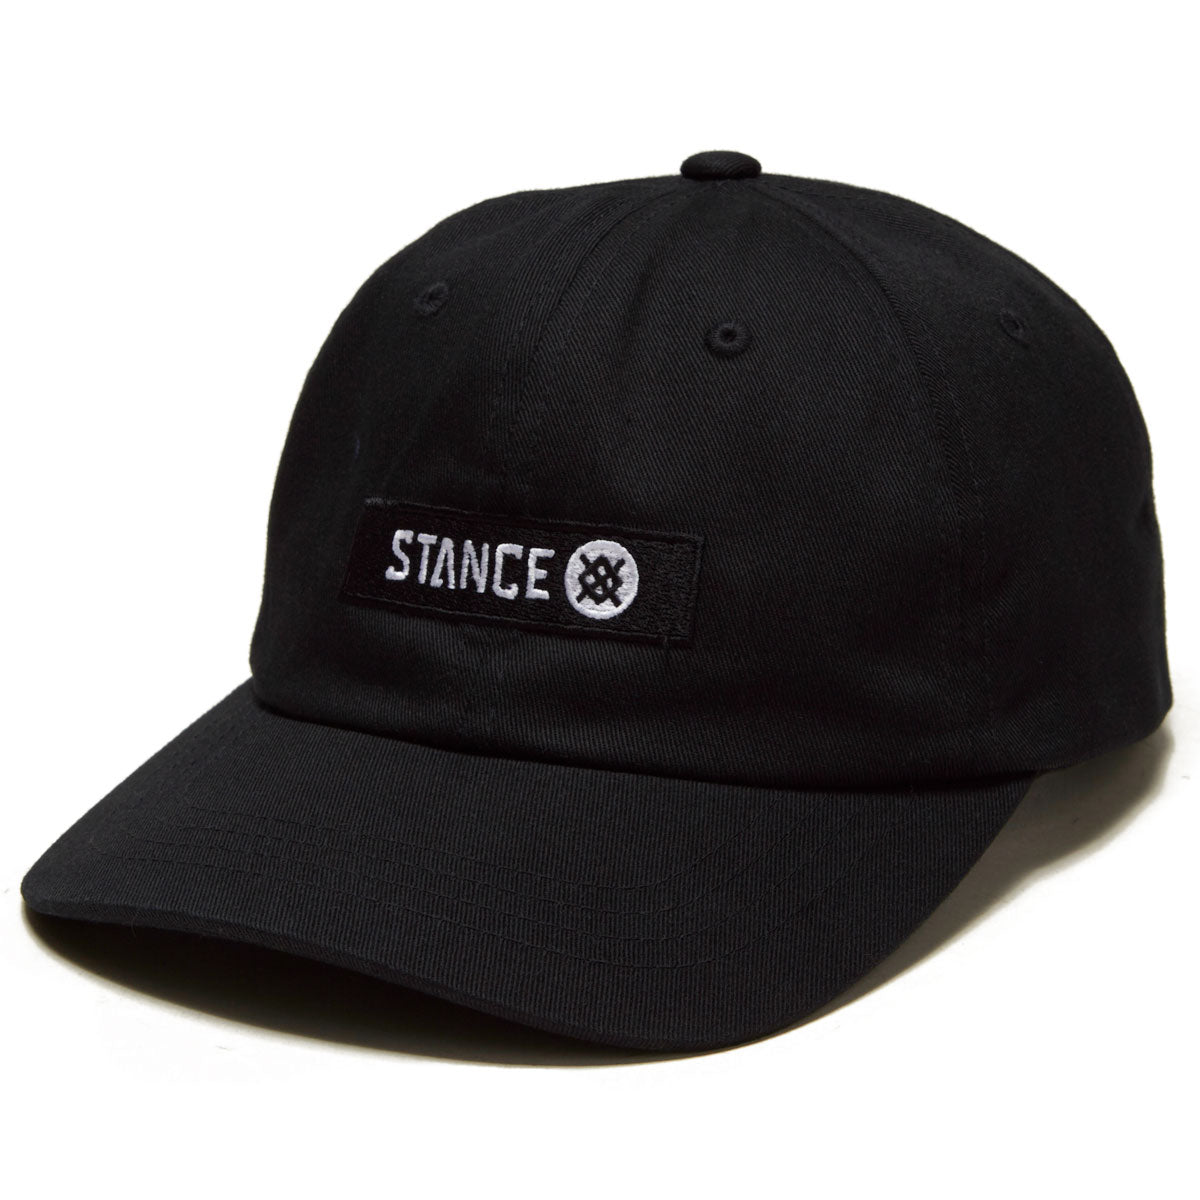 Stance Standard Adjustable Hat - Black image 1